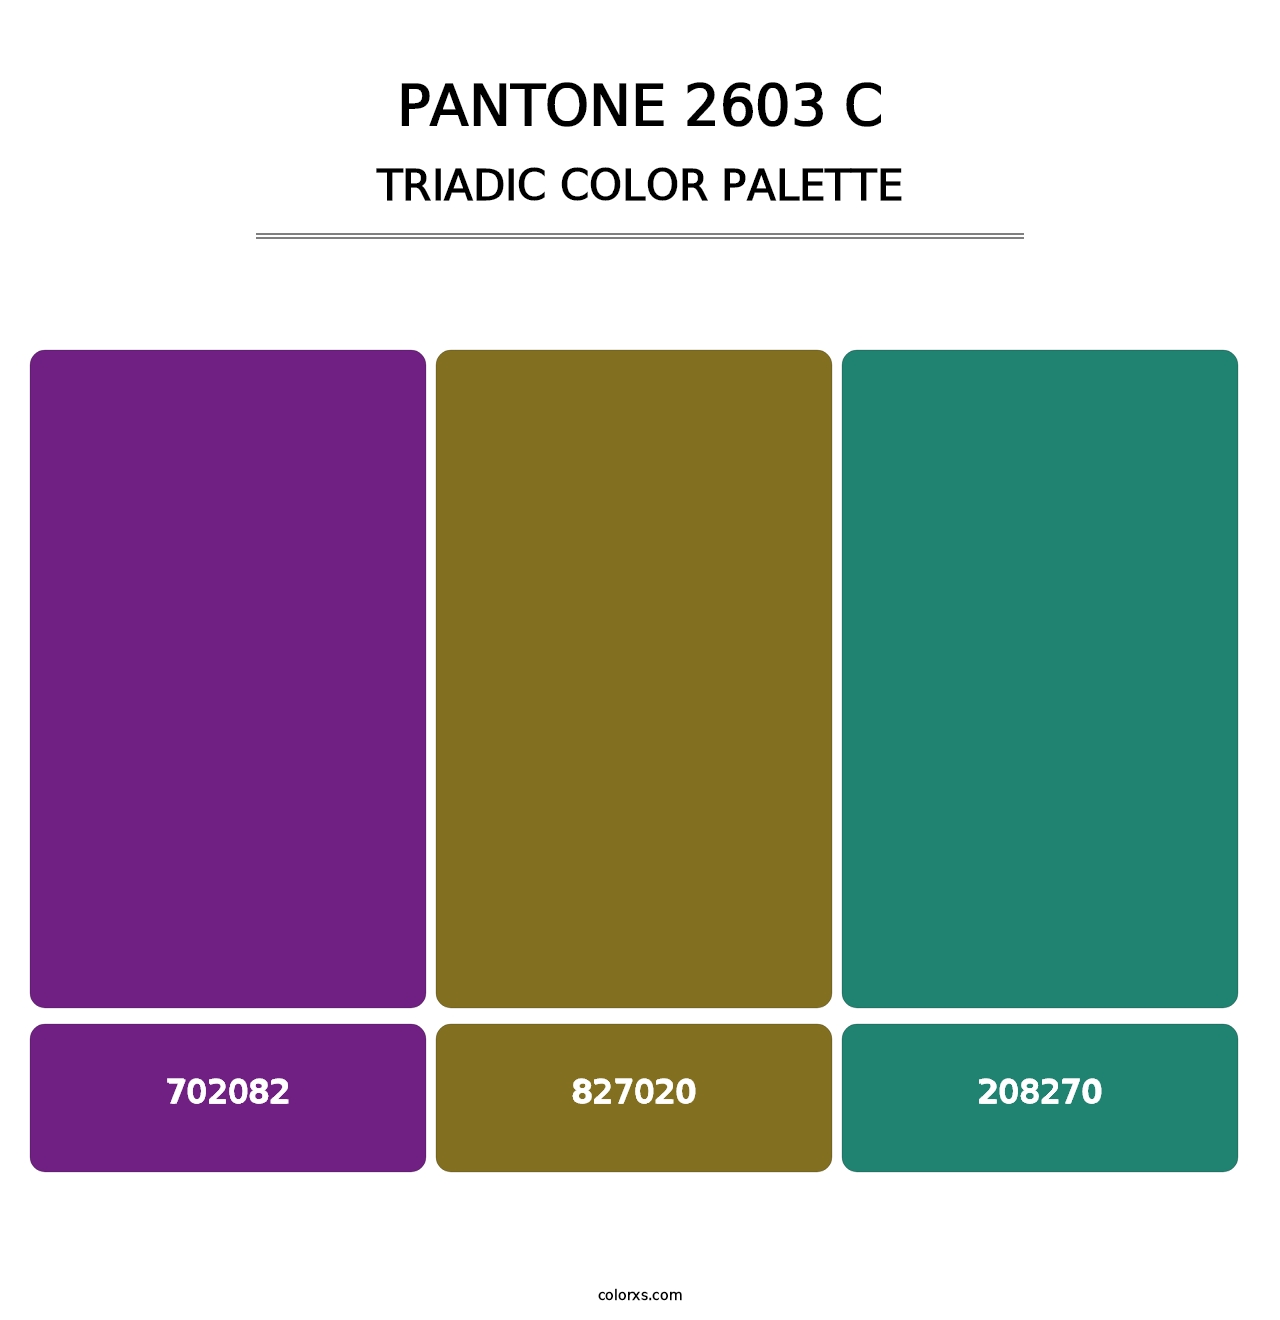 PANTONE 2603 C - Triadic Color Palette